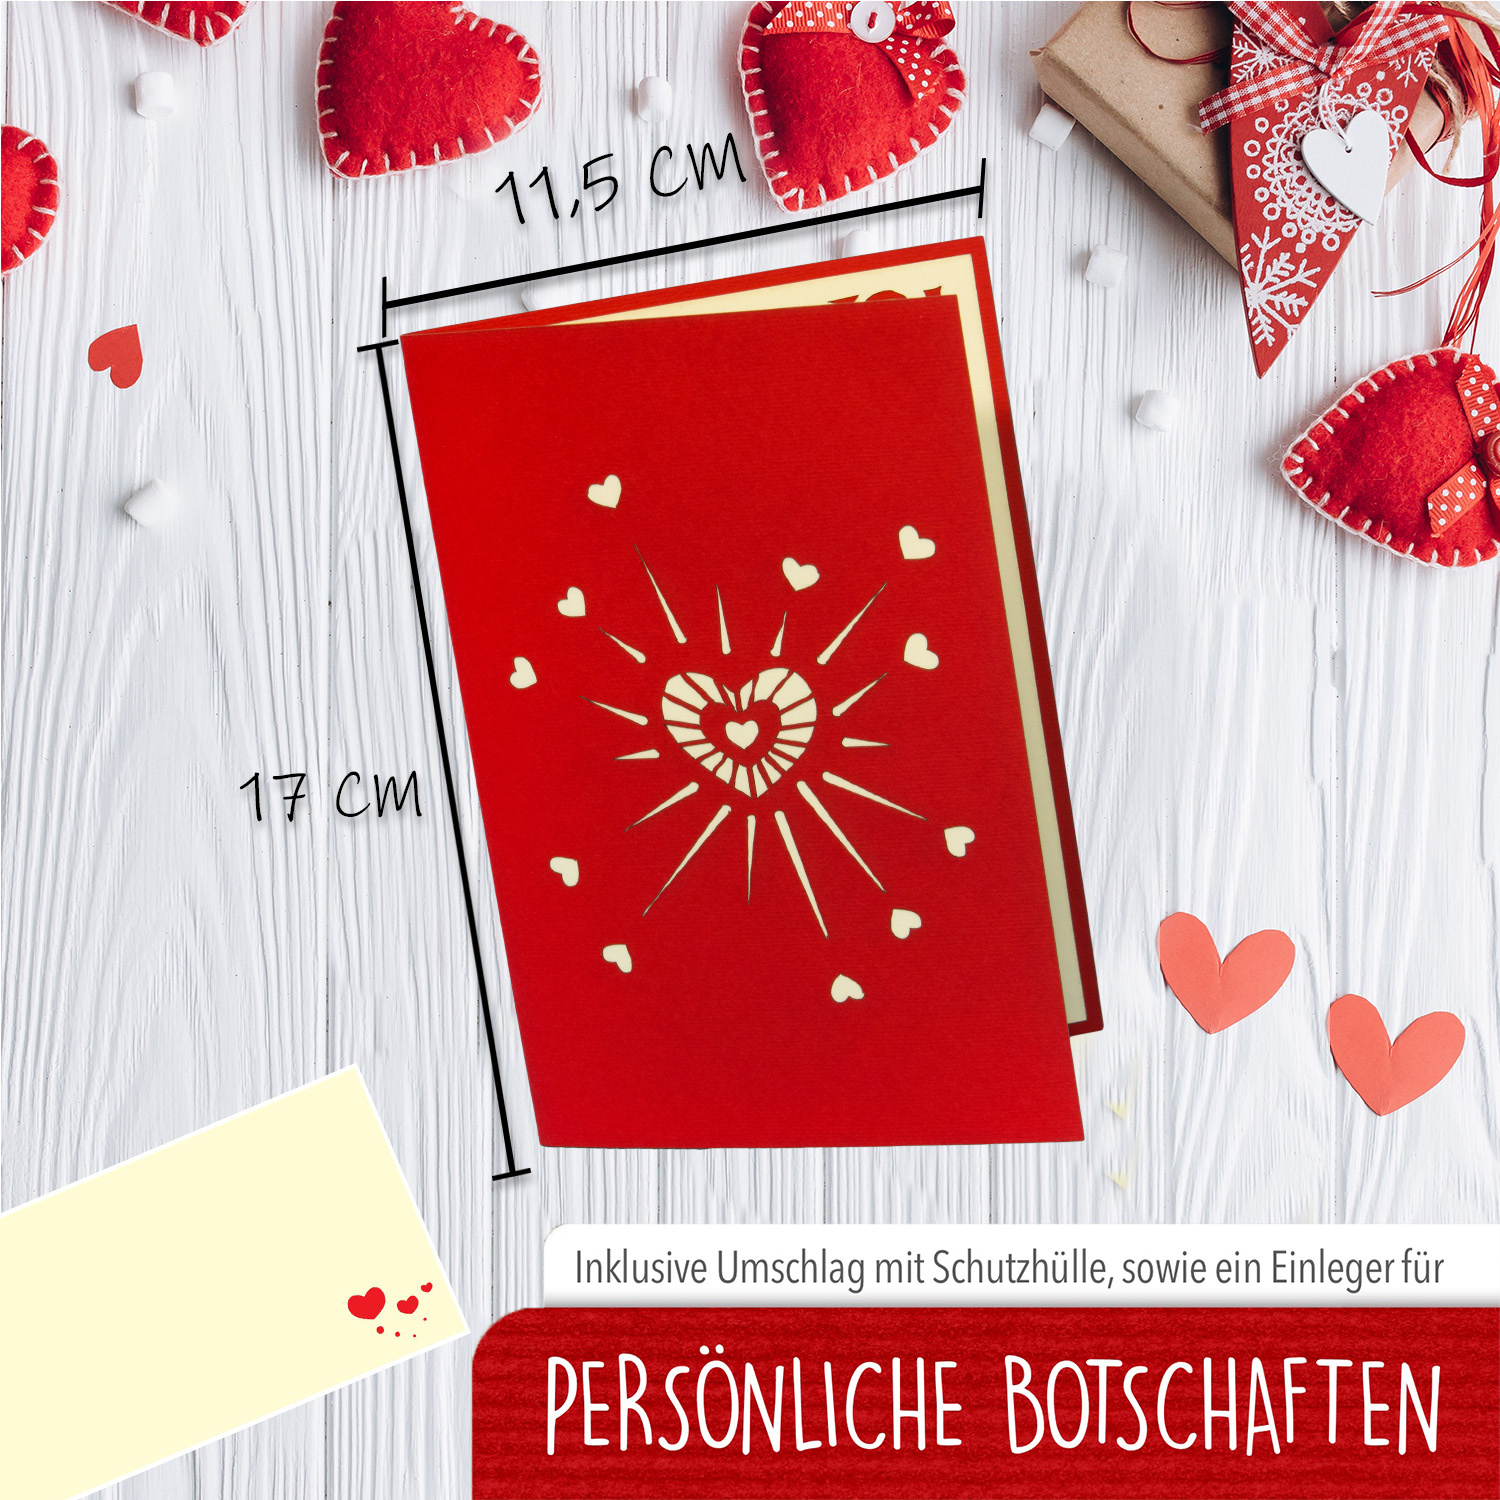 LINPOPUP Pop Up 3D Karte, Hochzeitskarte, Hochzeitseinladung, Valentinskarte, Herz Blumen, LIN17542, LINPopUp®, N296